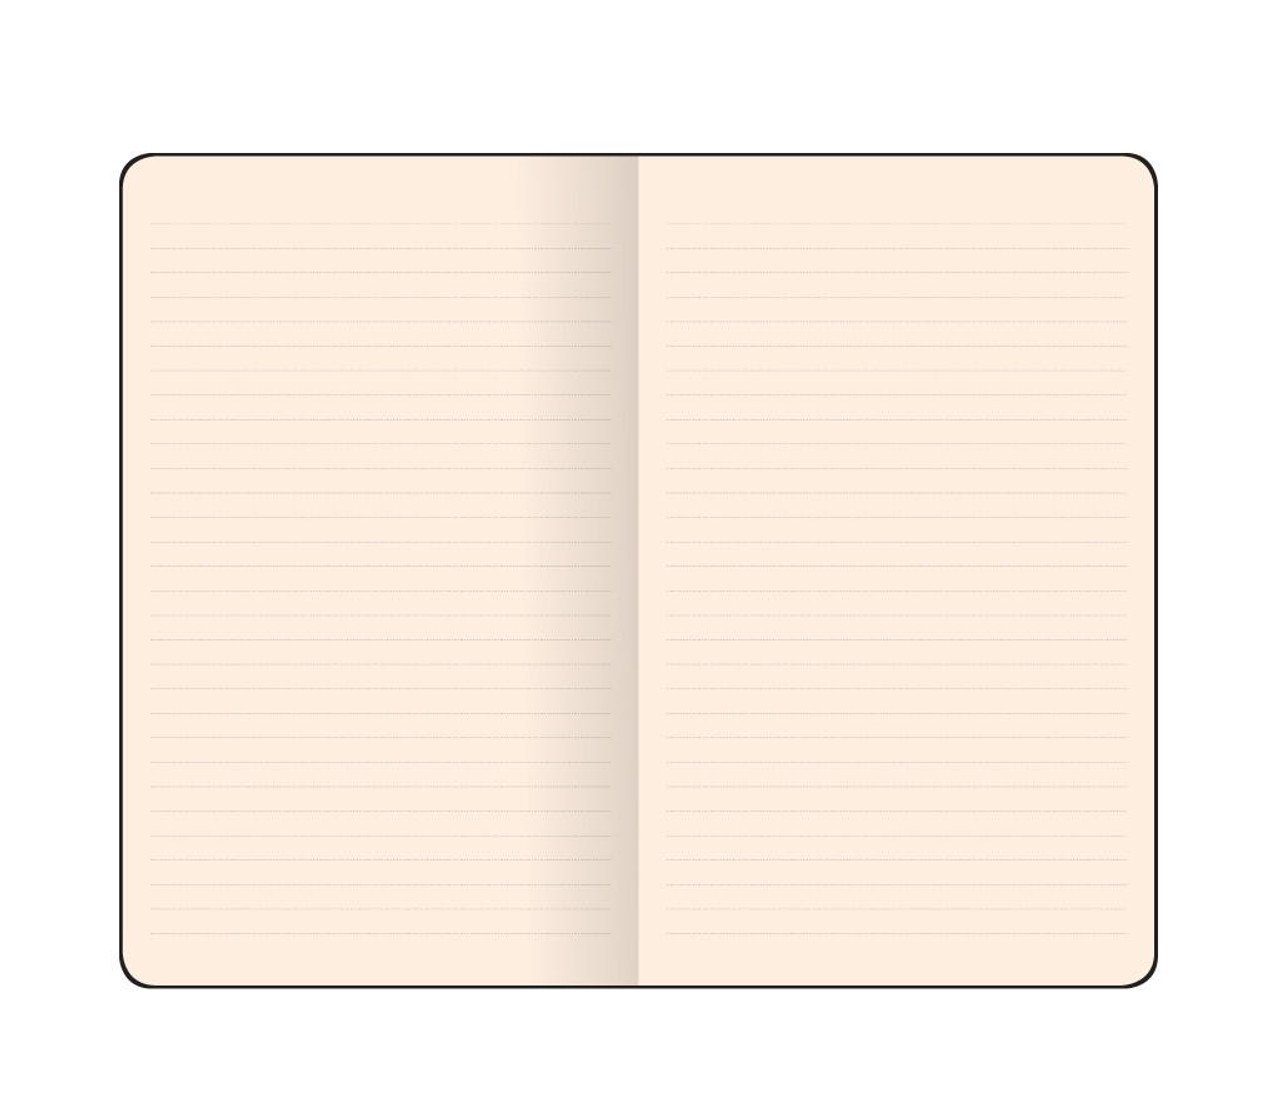 Flexbook Notizbuch Flexbook Smartbook 9*14cm viele Orange 160 Liniert Ökopapiereinband Größen/Fa Seiten